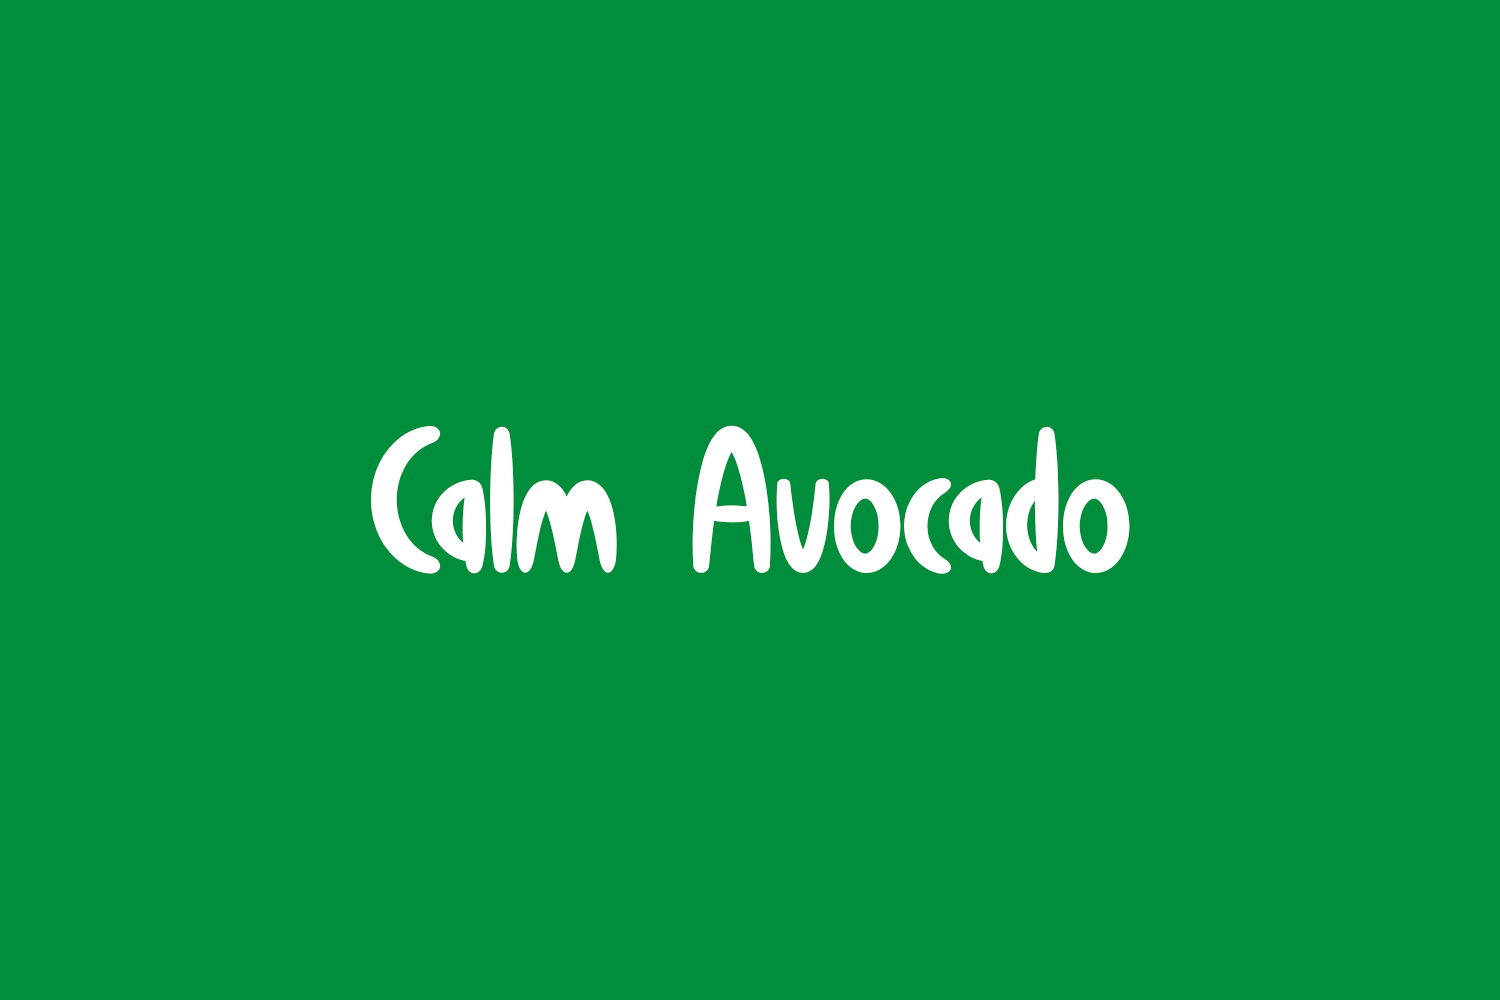 Calm Avocado Free Font